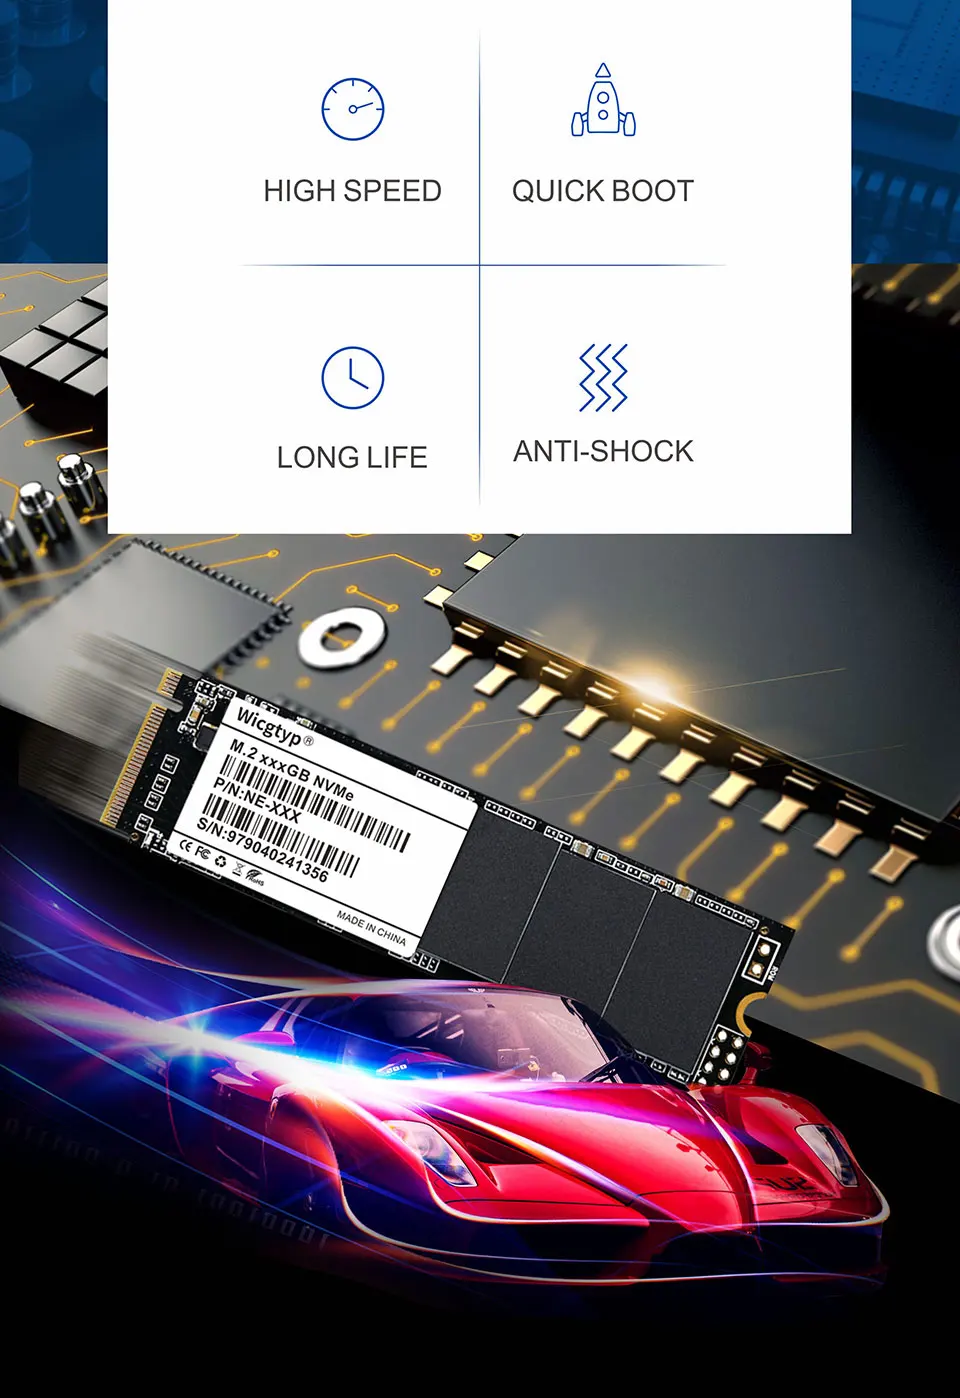 Wicgtyp M.2 SSD PCIe 128 Гб SSD жесткий диск M.2 NVMe pcie SSD внутренний жесткий диск для ноутбука MSI/Thinkpad P50